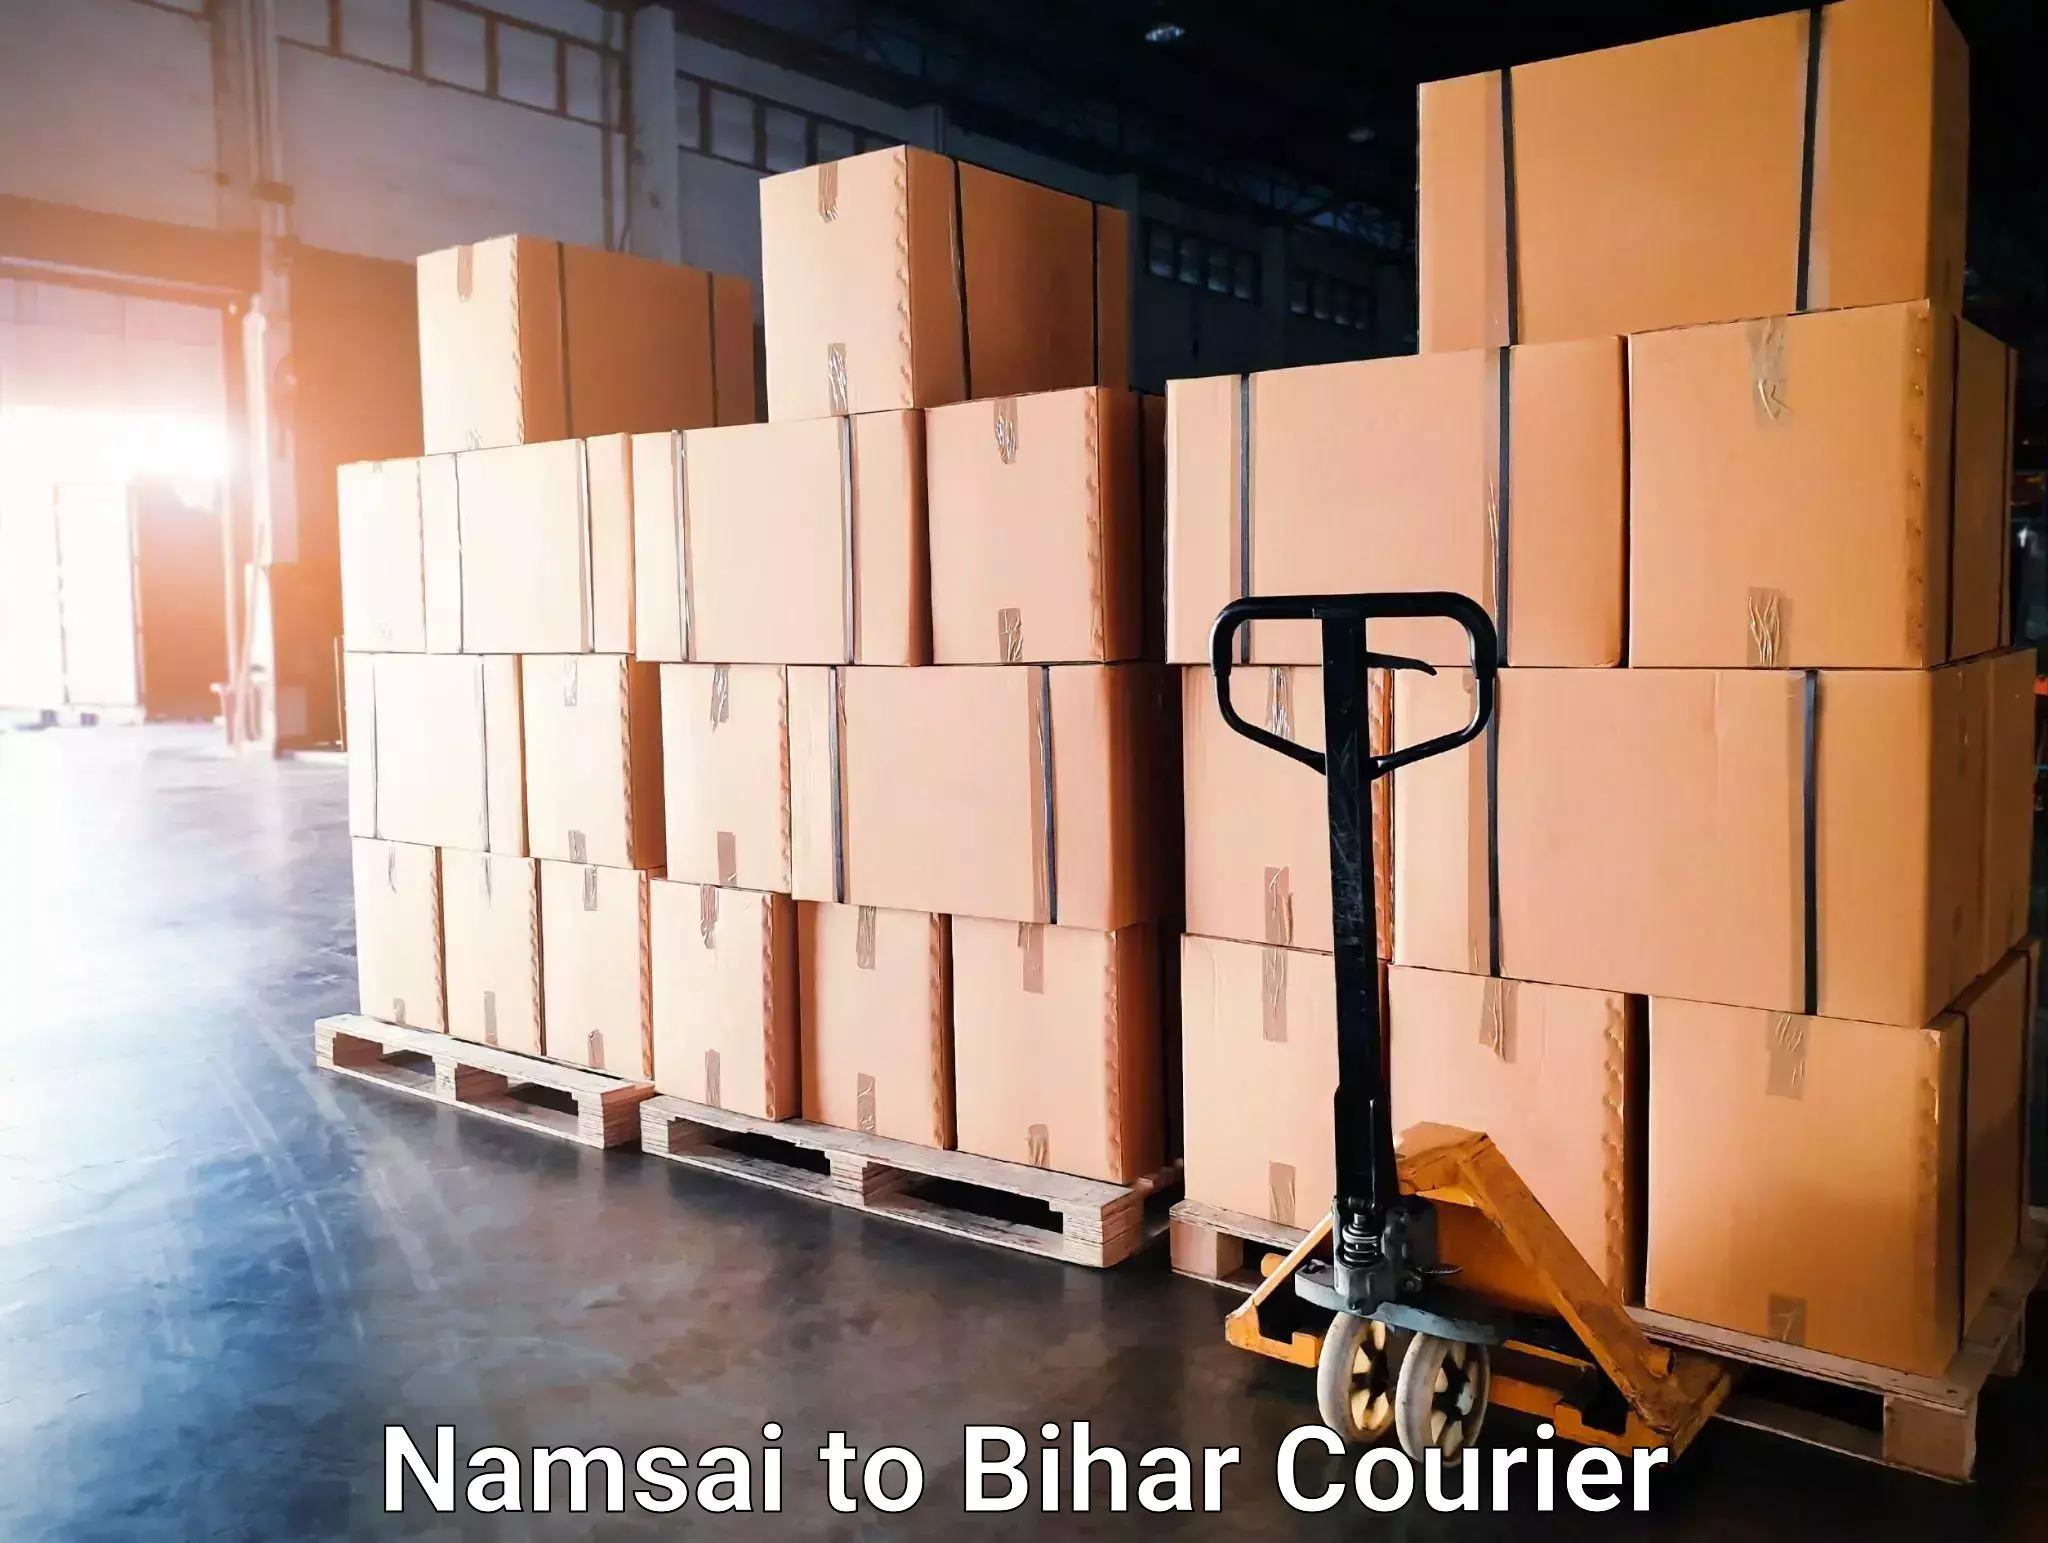 Courier service comparison Namsai to Bihar